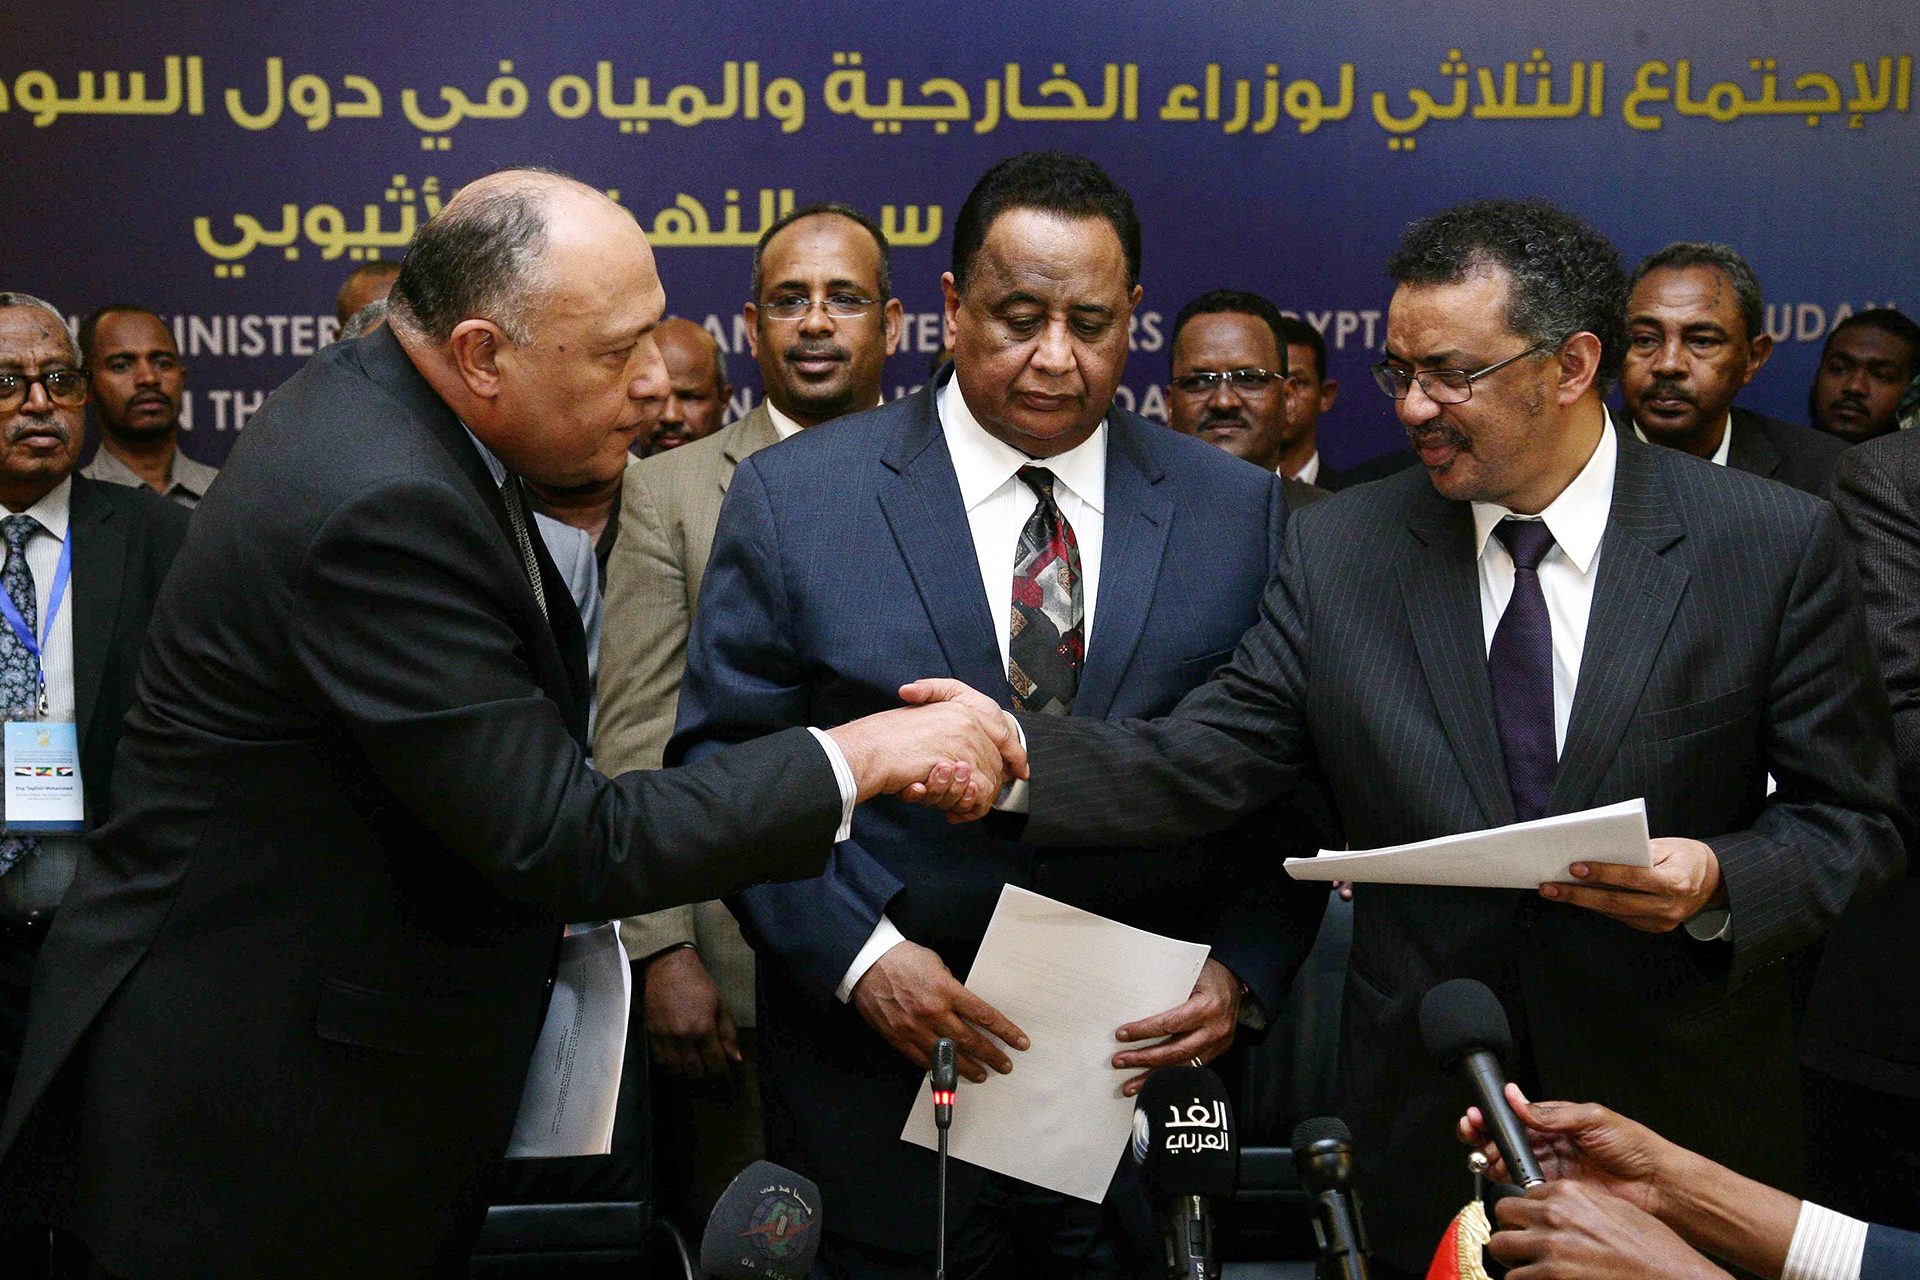 Accordo preliminare tra Etiopia, Egitto e Sudan